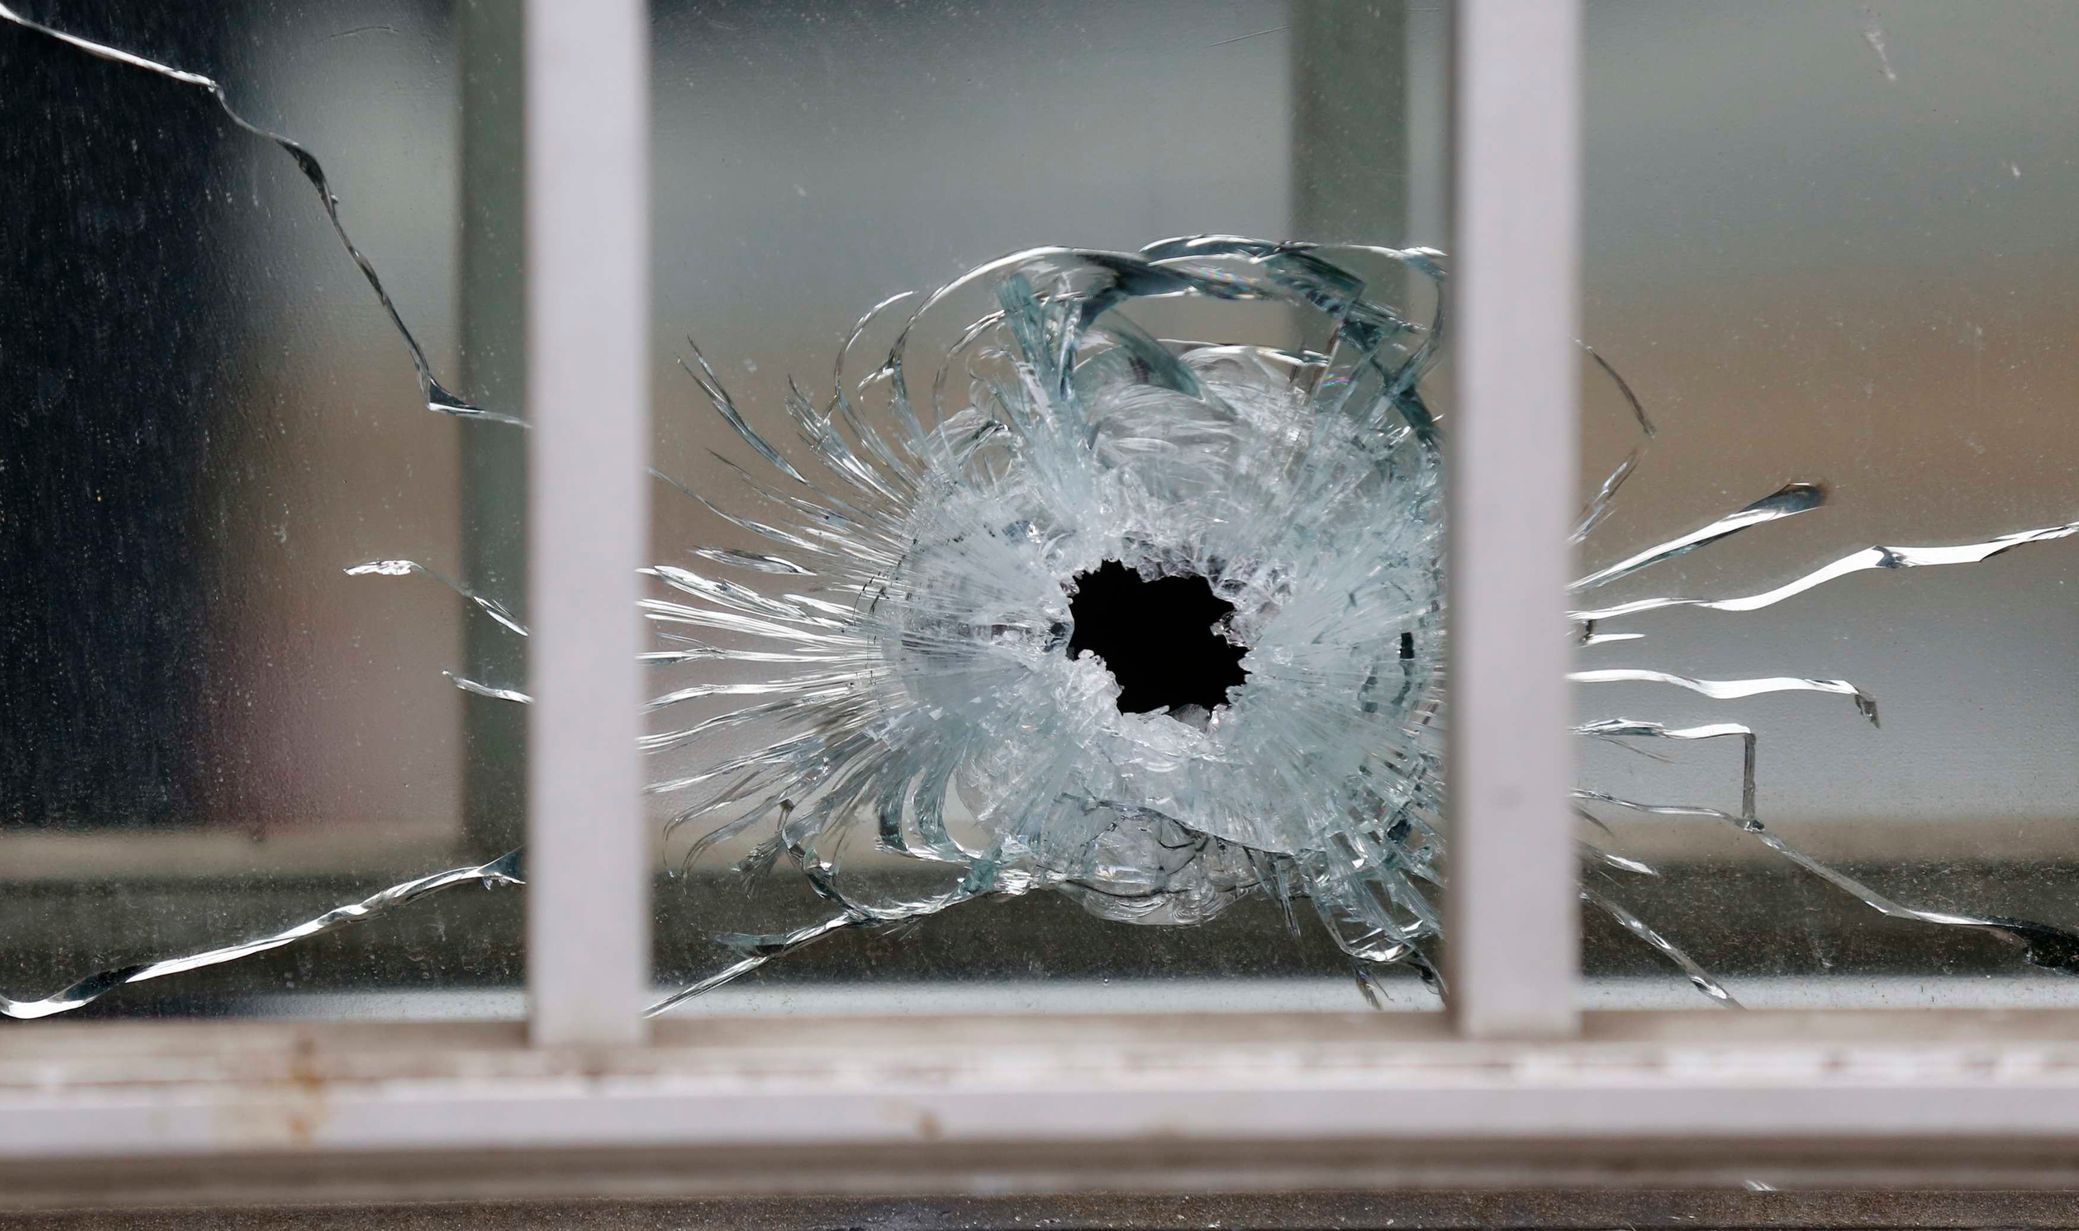 Masakr v redakci pařížského týdeníku Charlie Hebdo